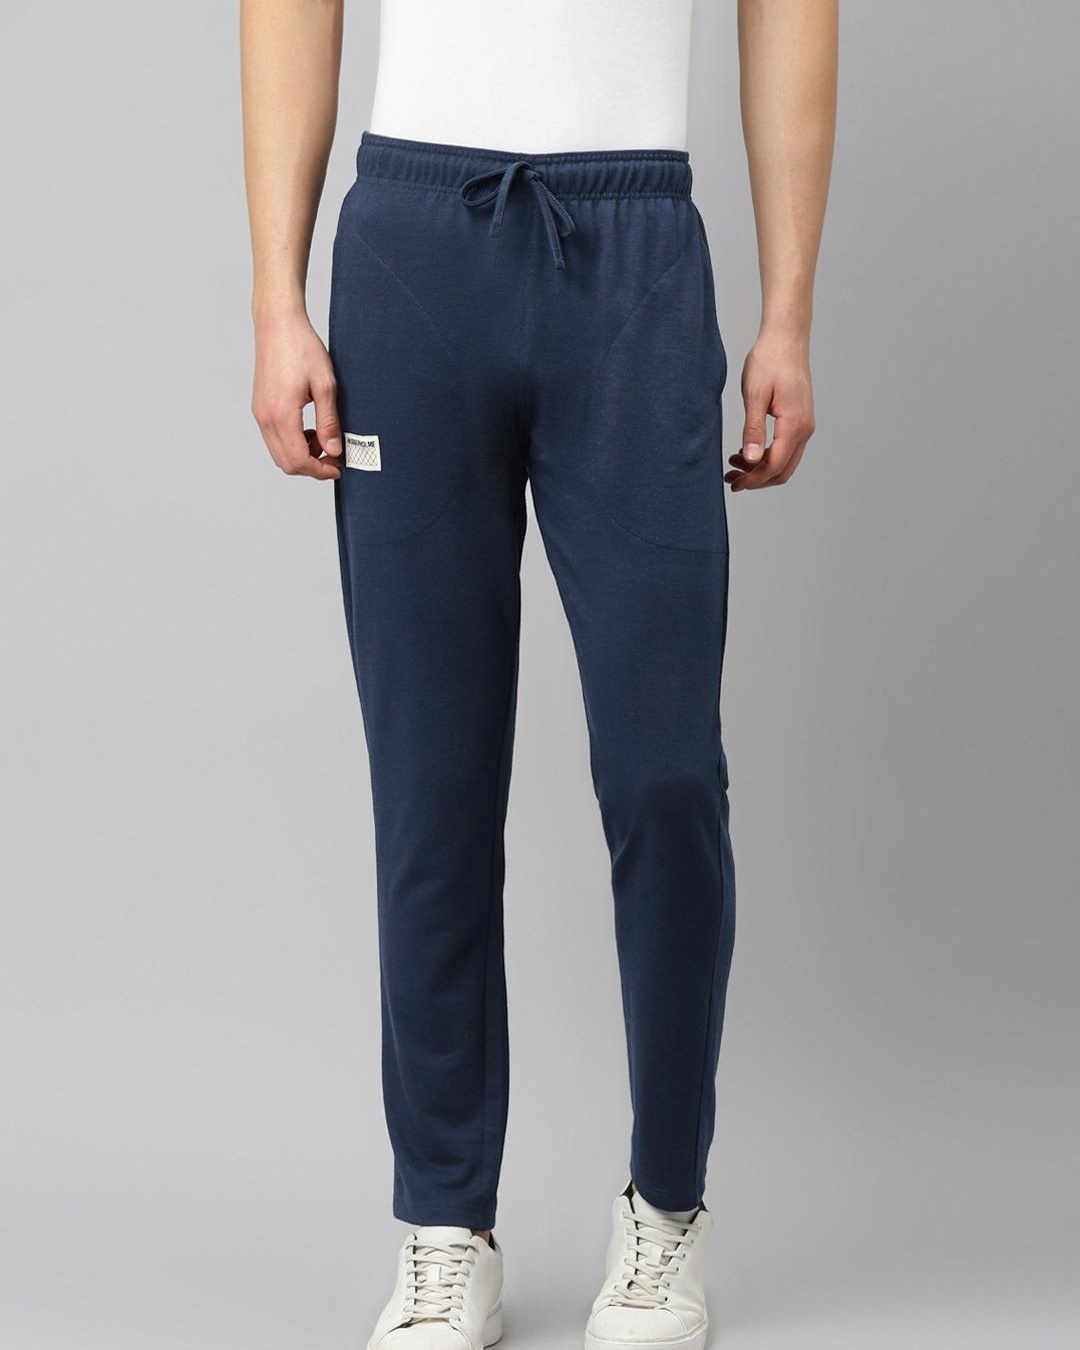 Buy HubberHolme Men's Blue Slim Fit Track Pants for Men Blue Online at ...